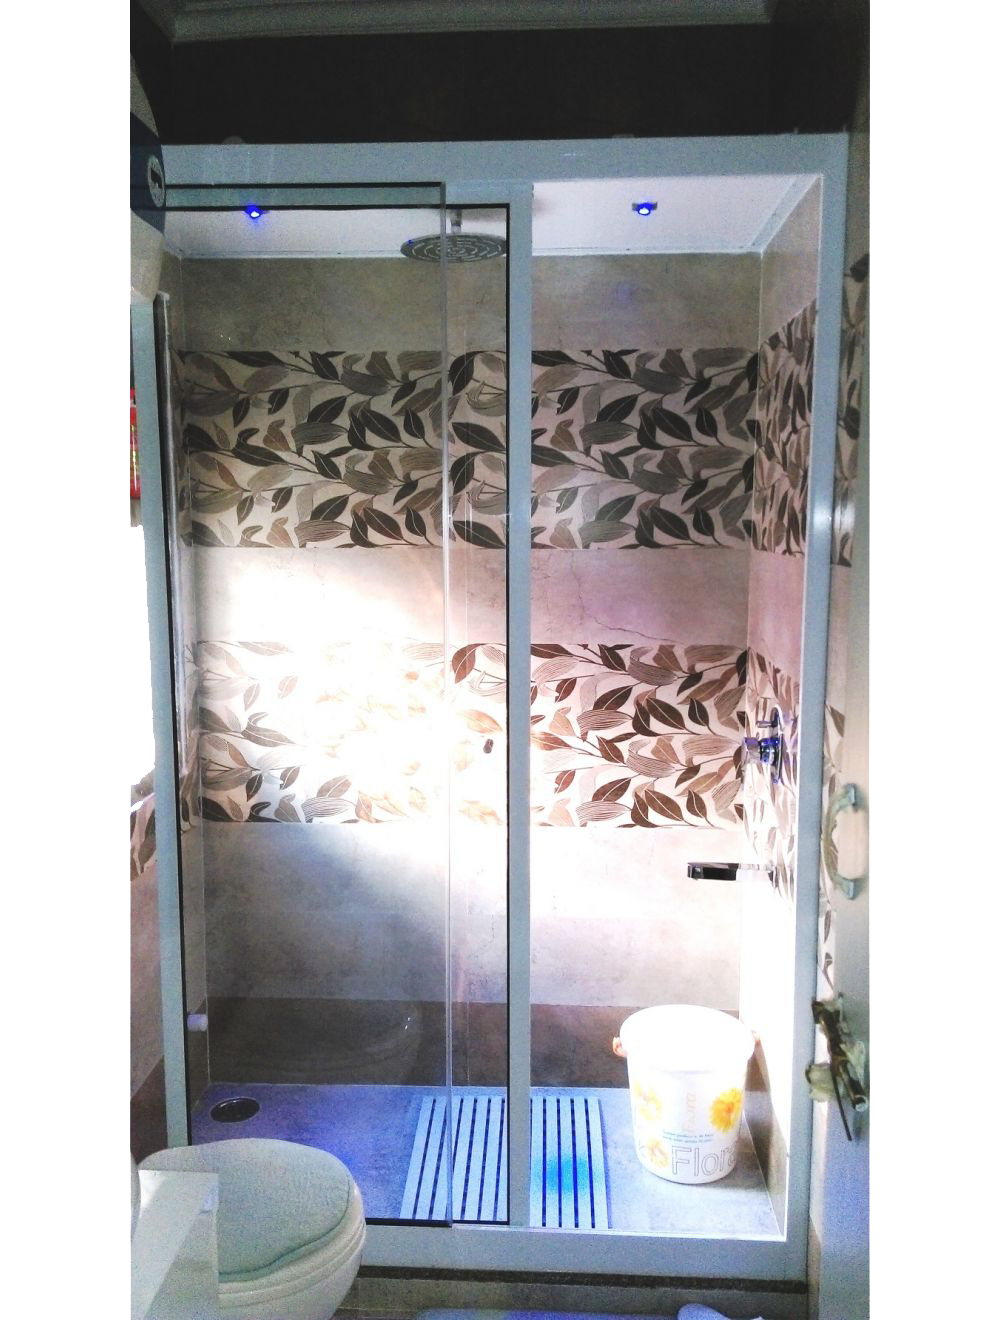 (POLISHED CHROME) MODONA Glass Wall Shelf with Rail Polished Chrome Year Warrantee - 1